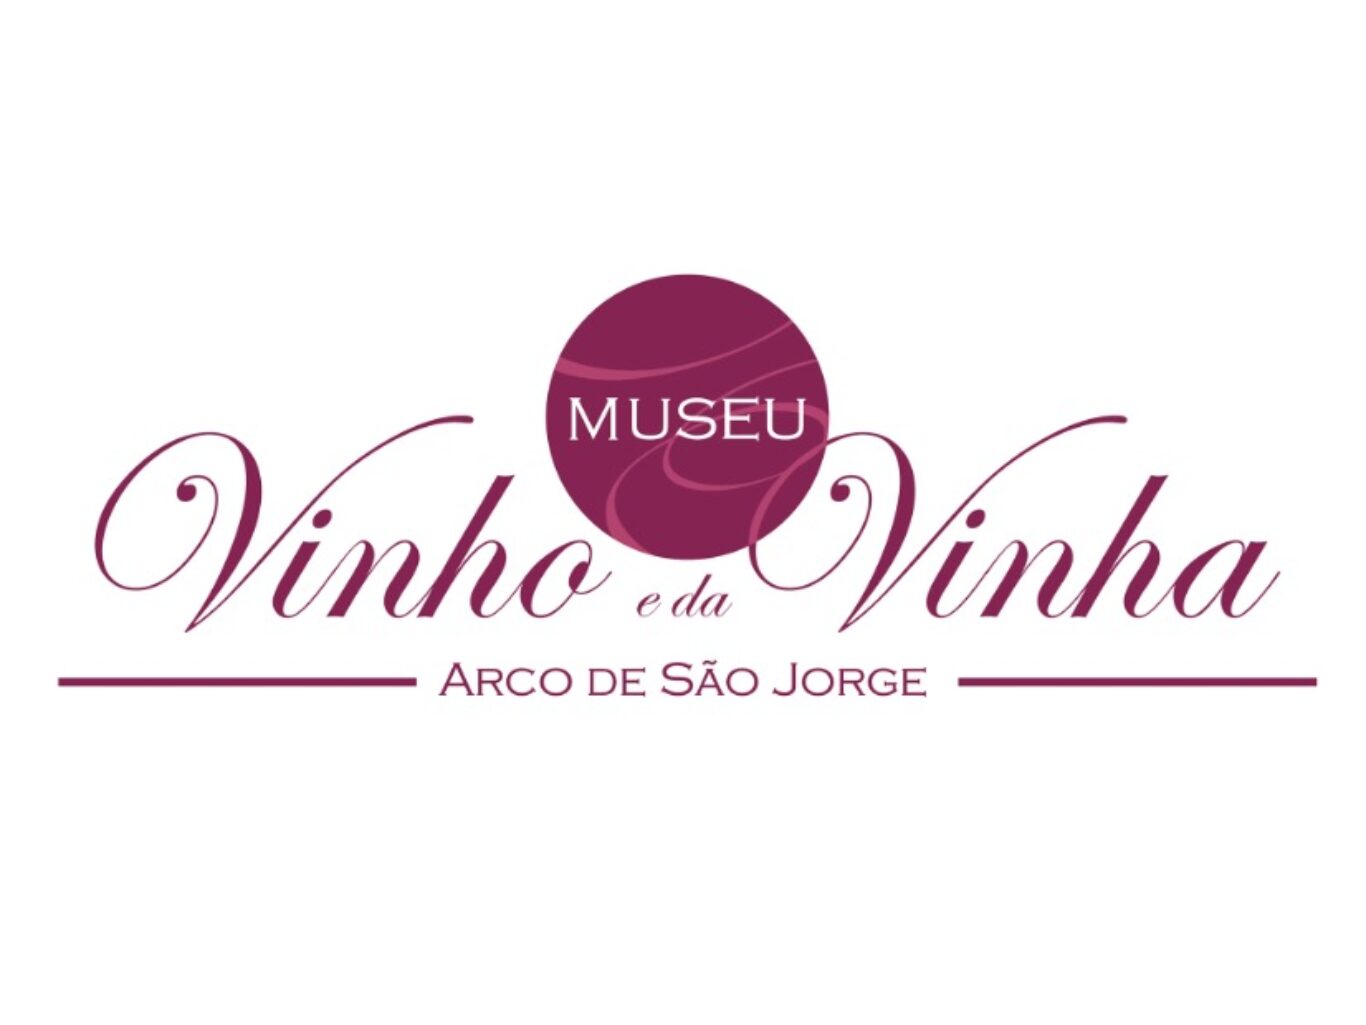 Museu do vinho e da vinha